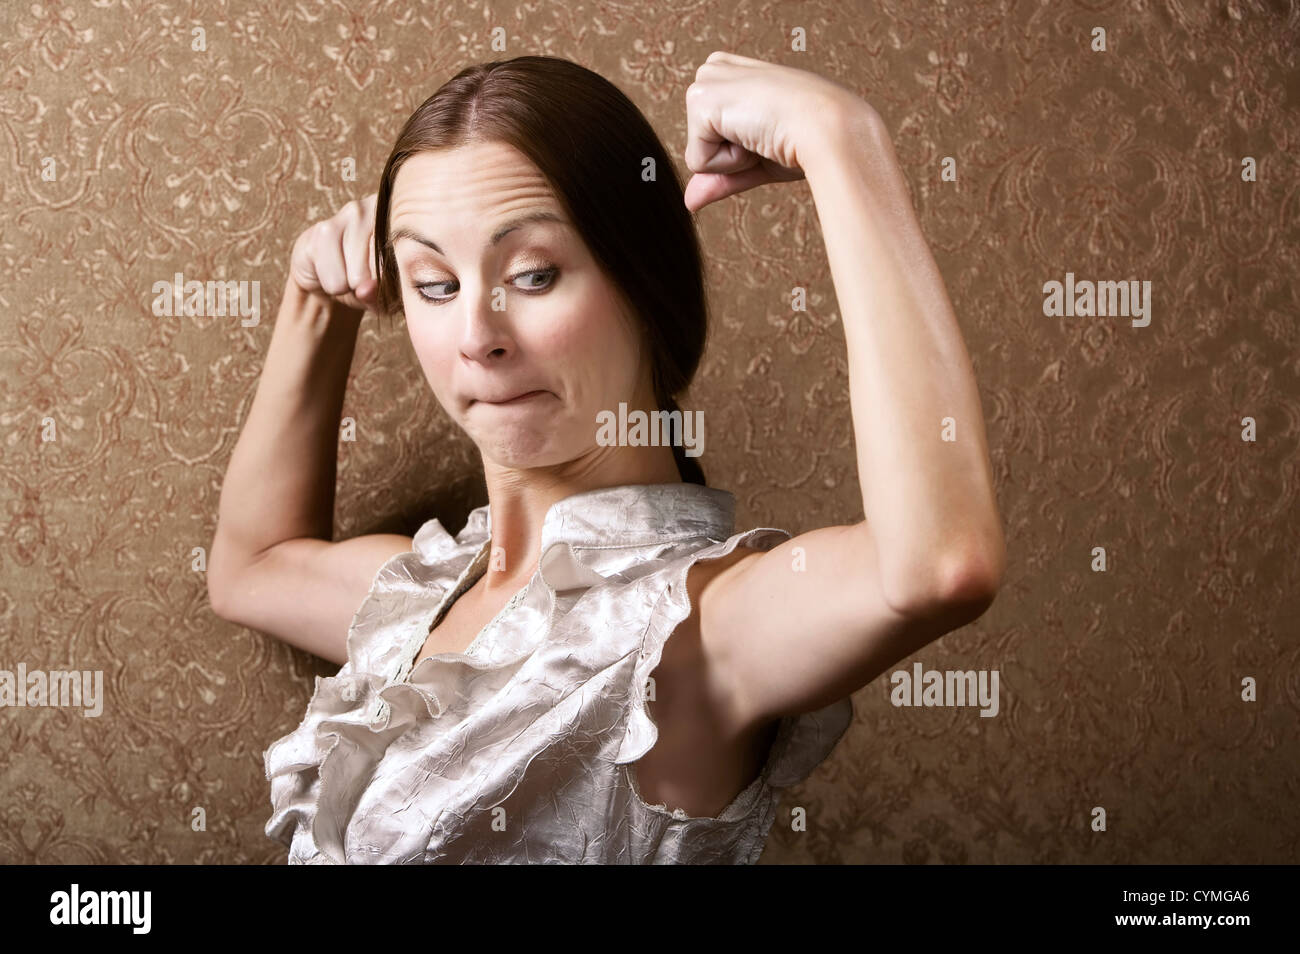 Jolie Jeune femme admirant sa flexion des biceps Banque D'Images